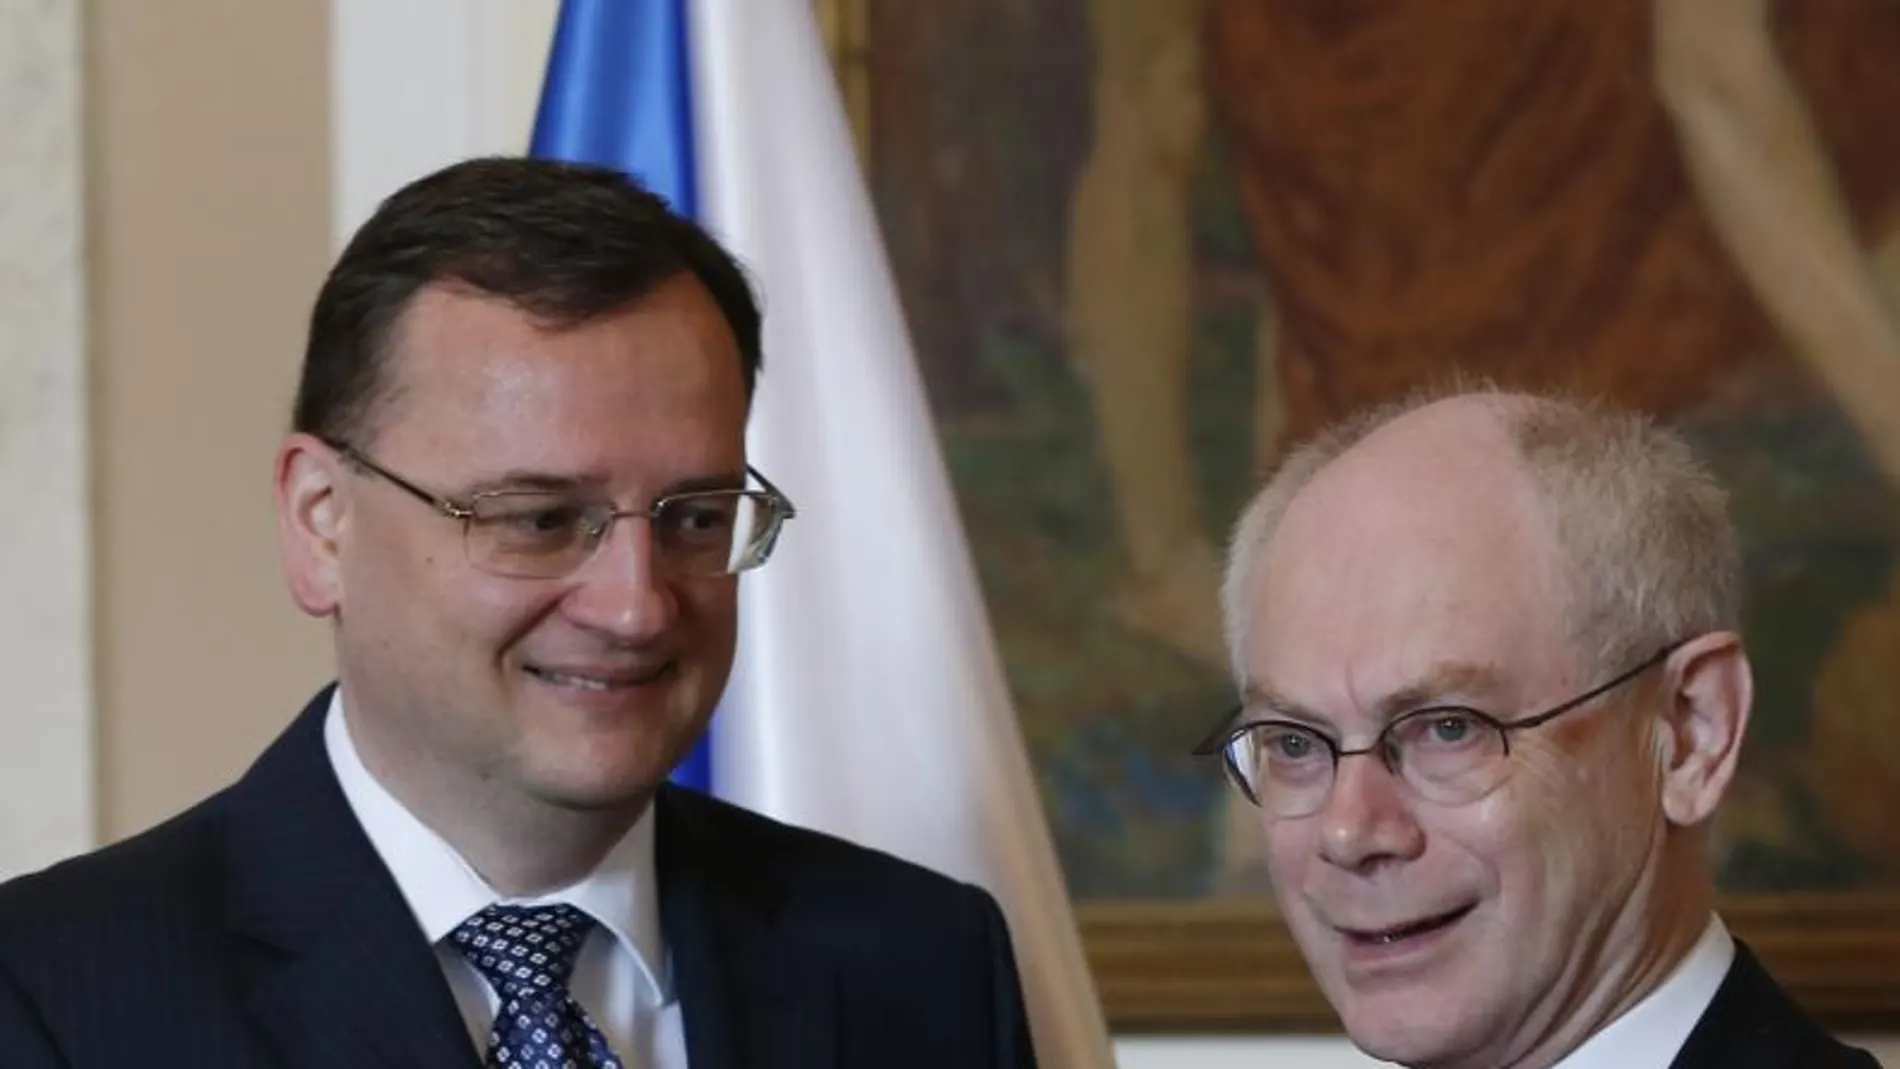 El Primer Ministro de la República Checa, Petr Necas, da la bienvenida al Persidente del Consejo de Europa Herman Van Rompuy en Praga, hoy 25 de abril de 2013.